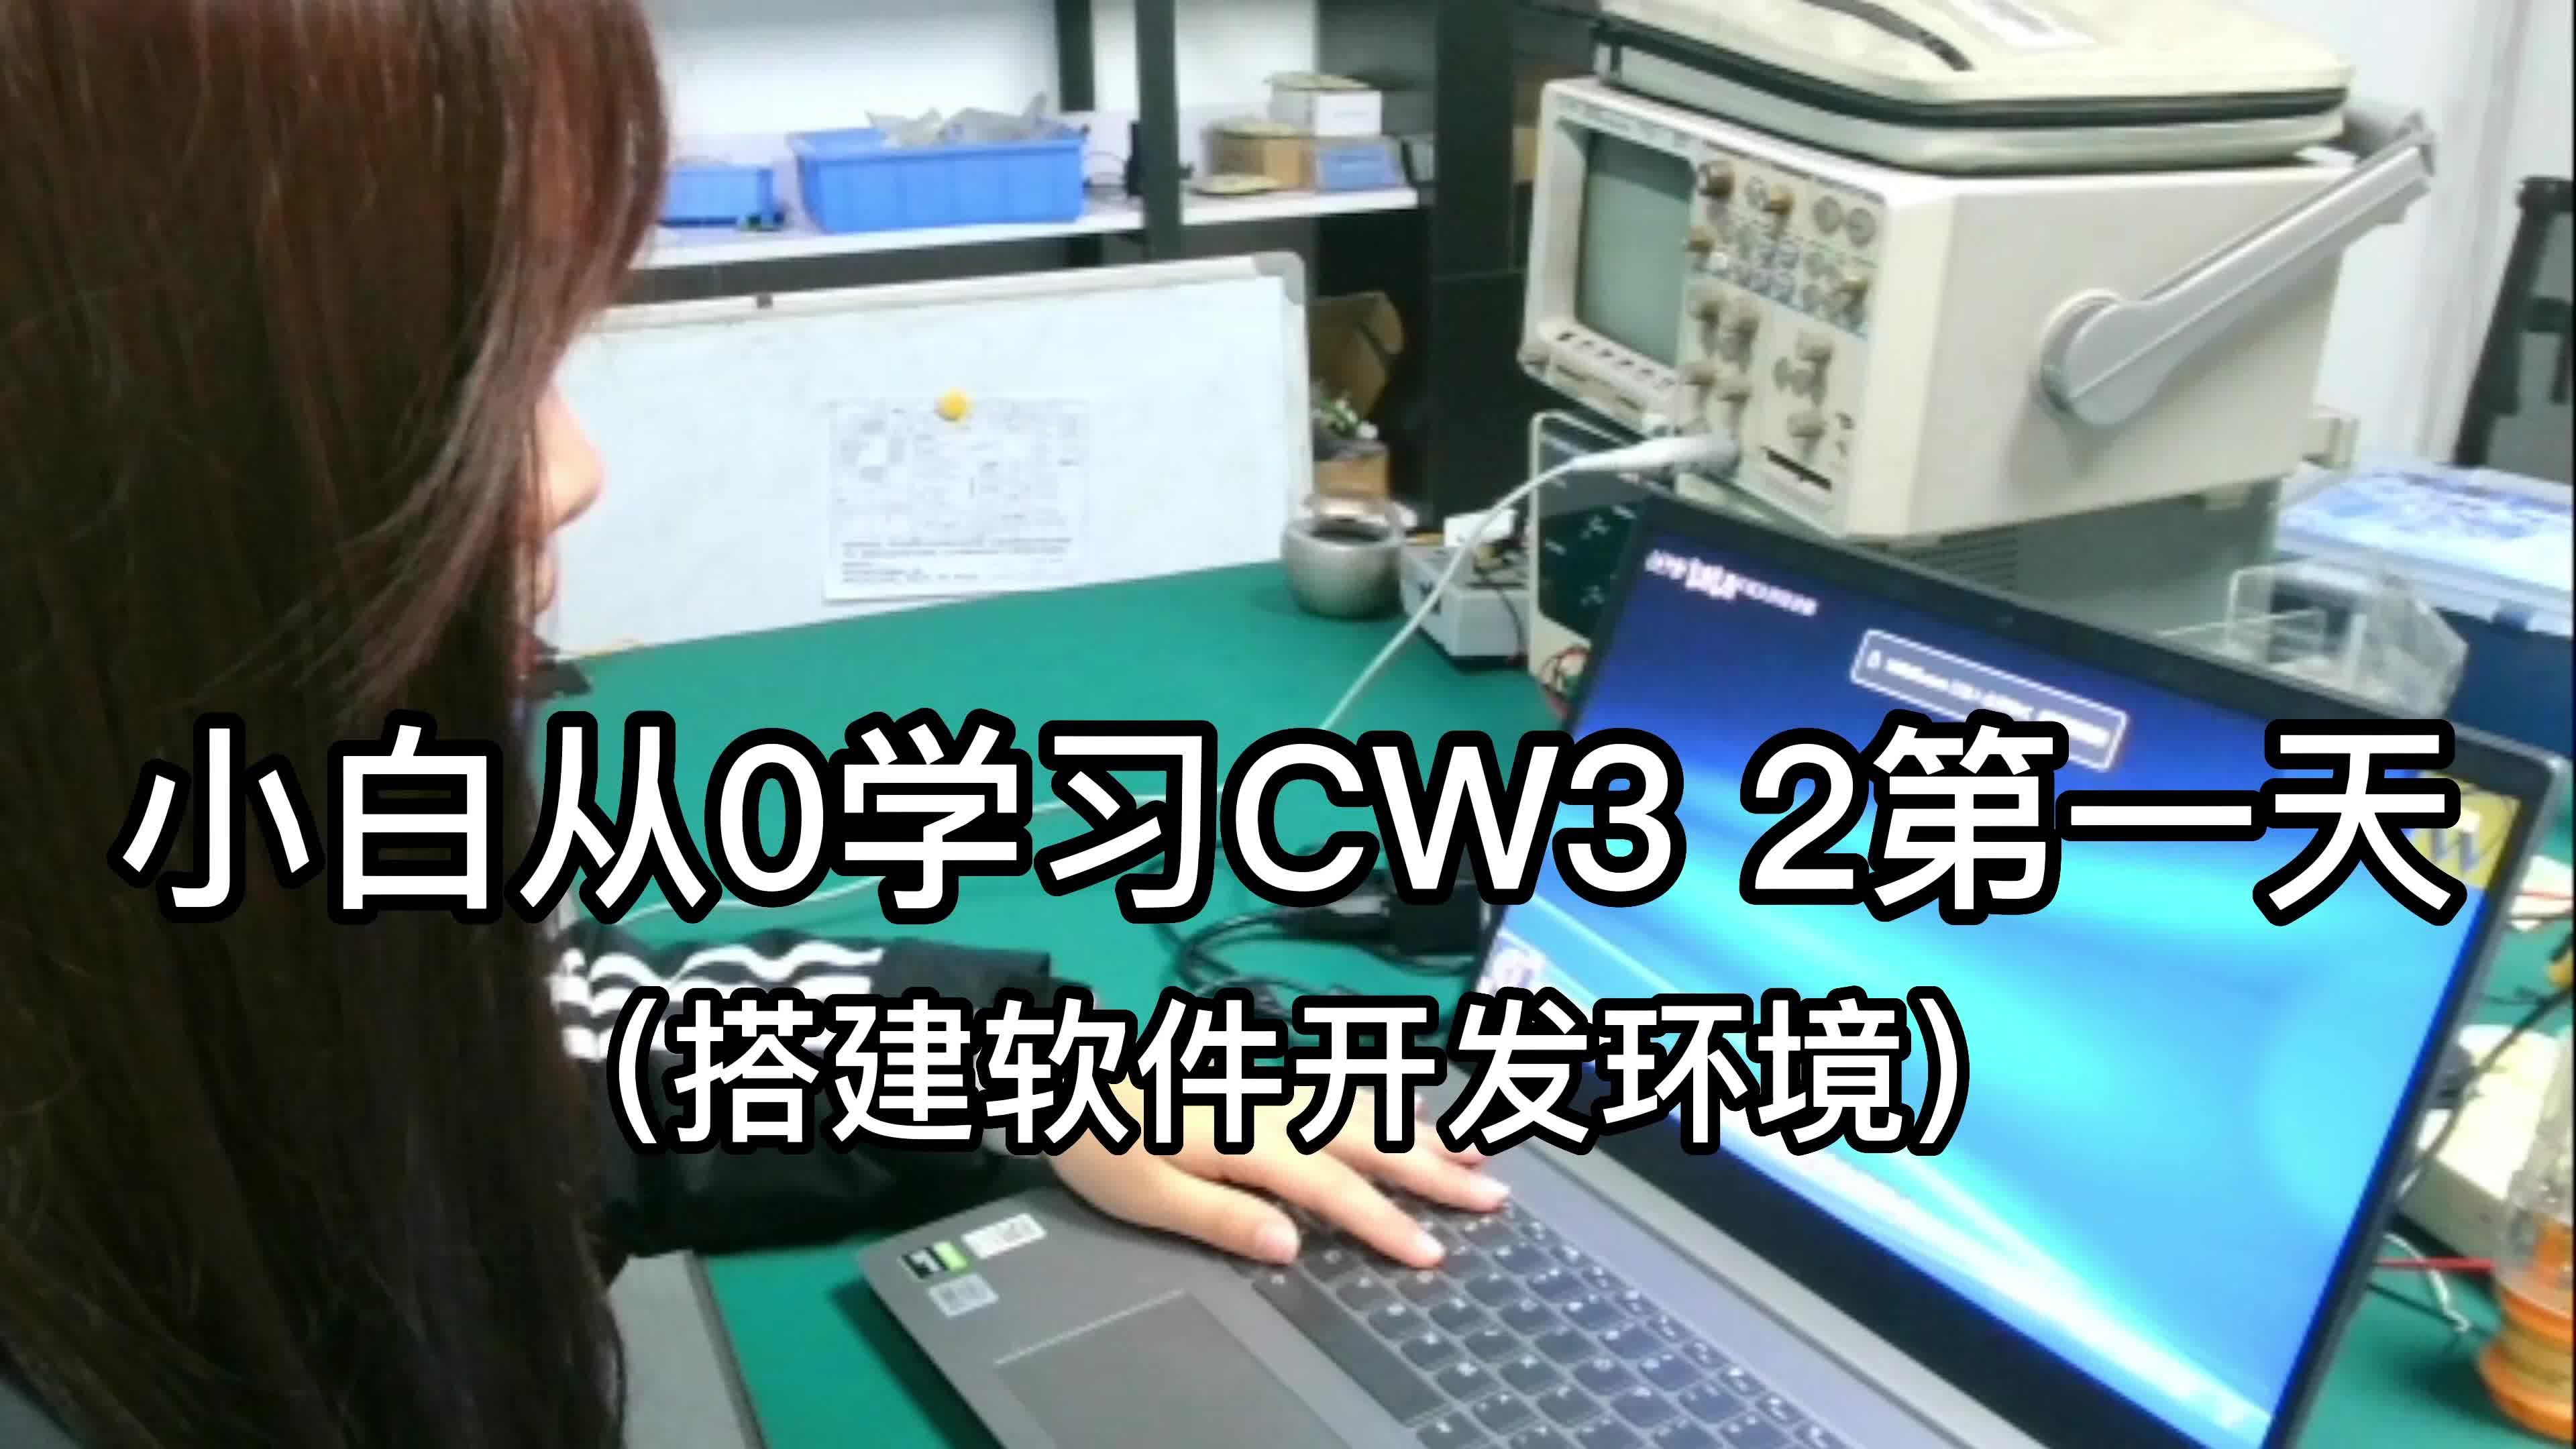 小白从0学习CW32的第一天（搭建软件开发环境）# CW32# 嵌入式